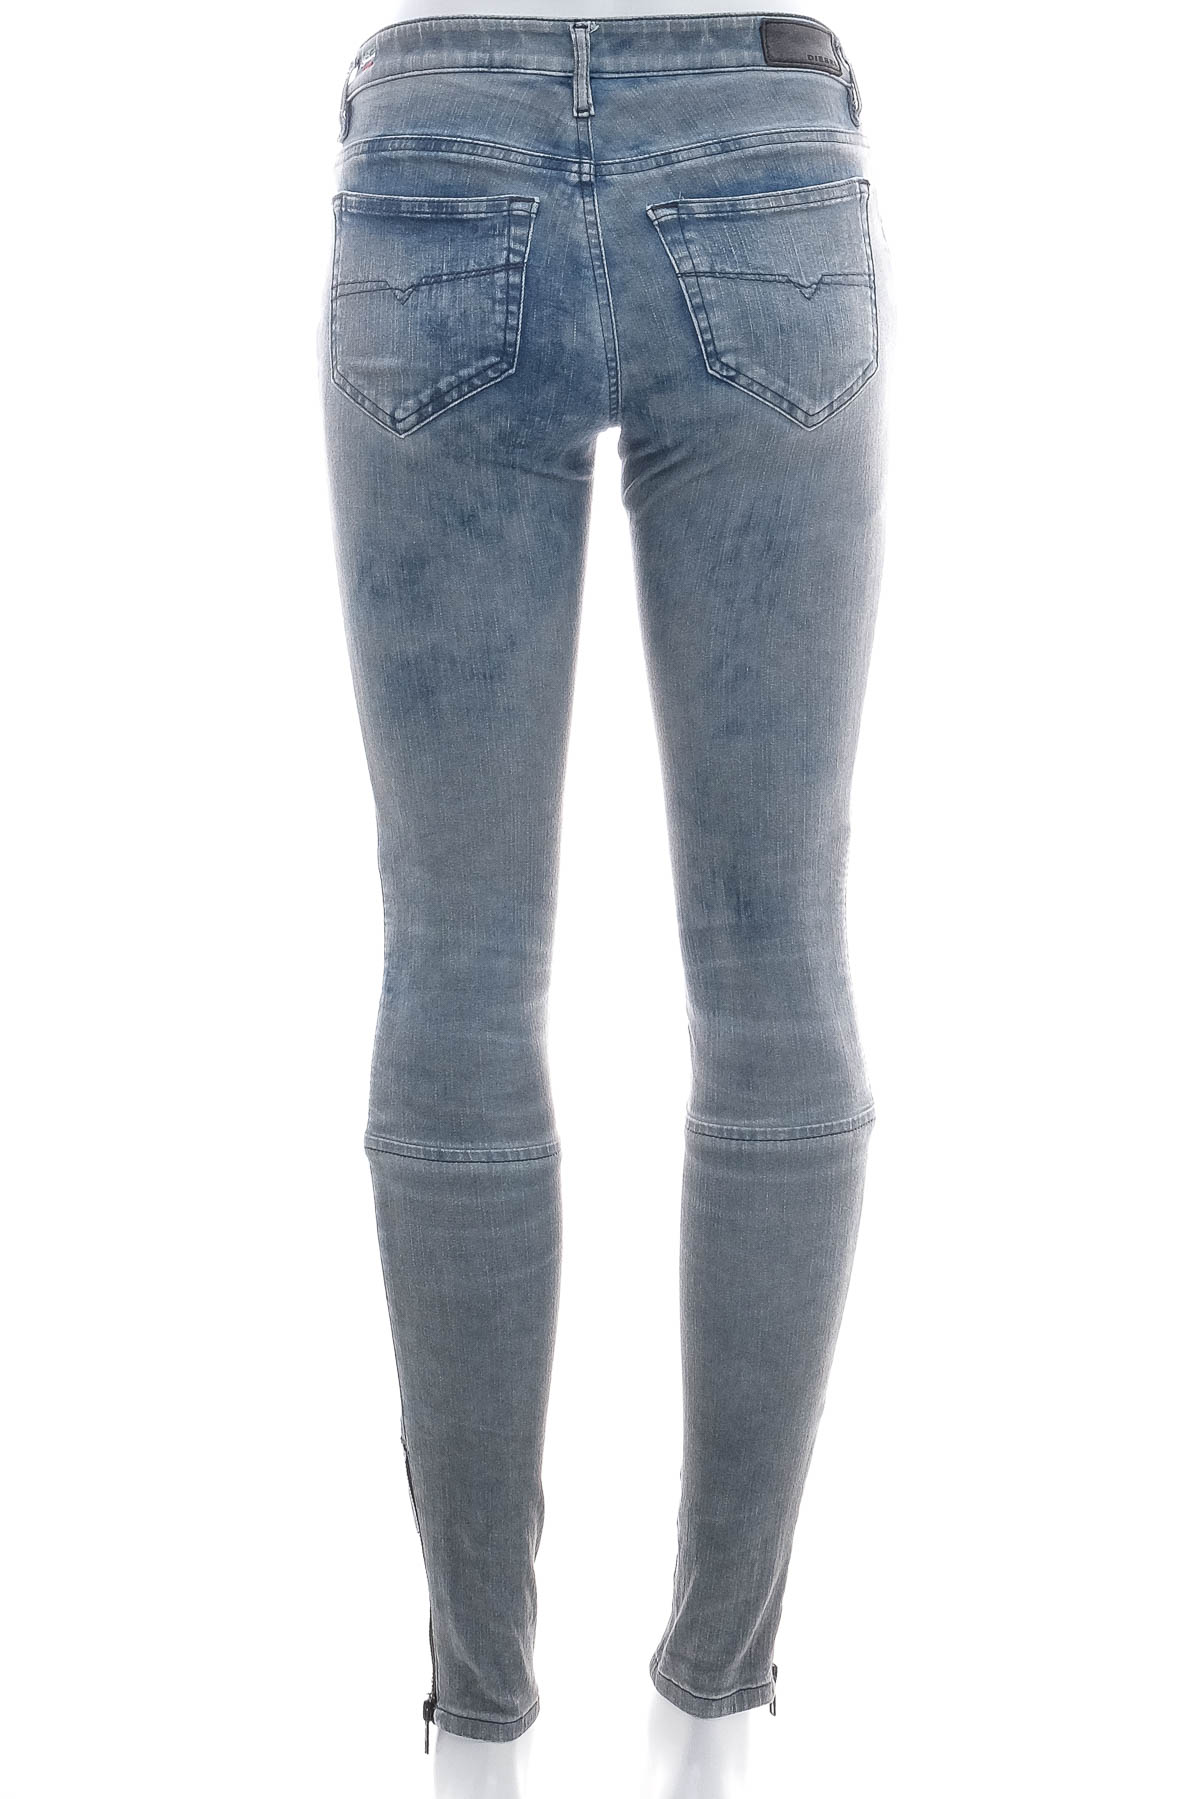 Women's jeans - DIESEL - 1